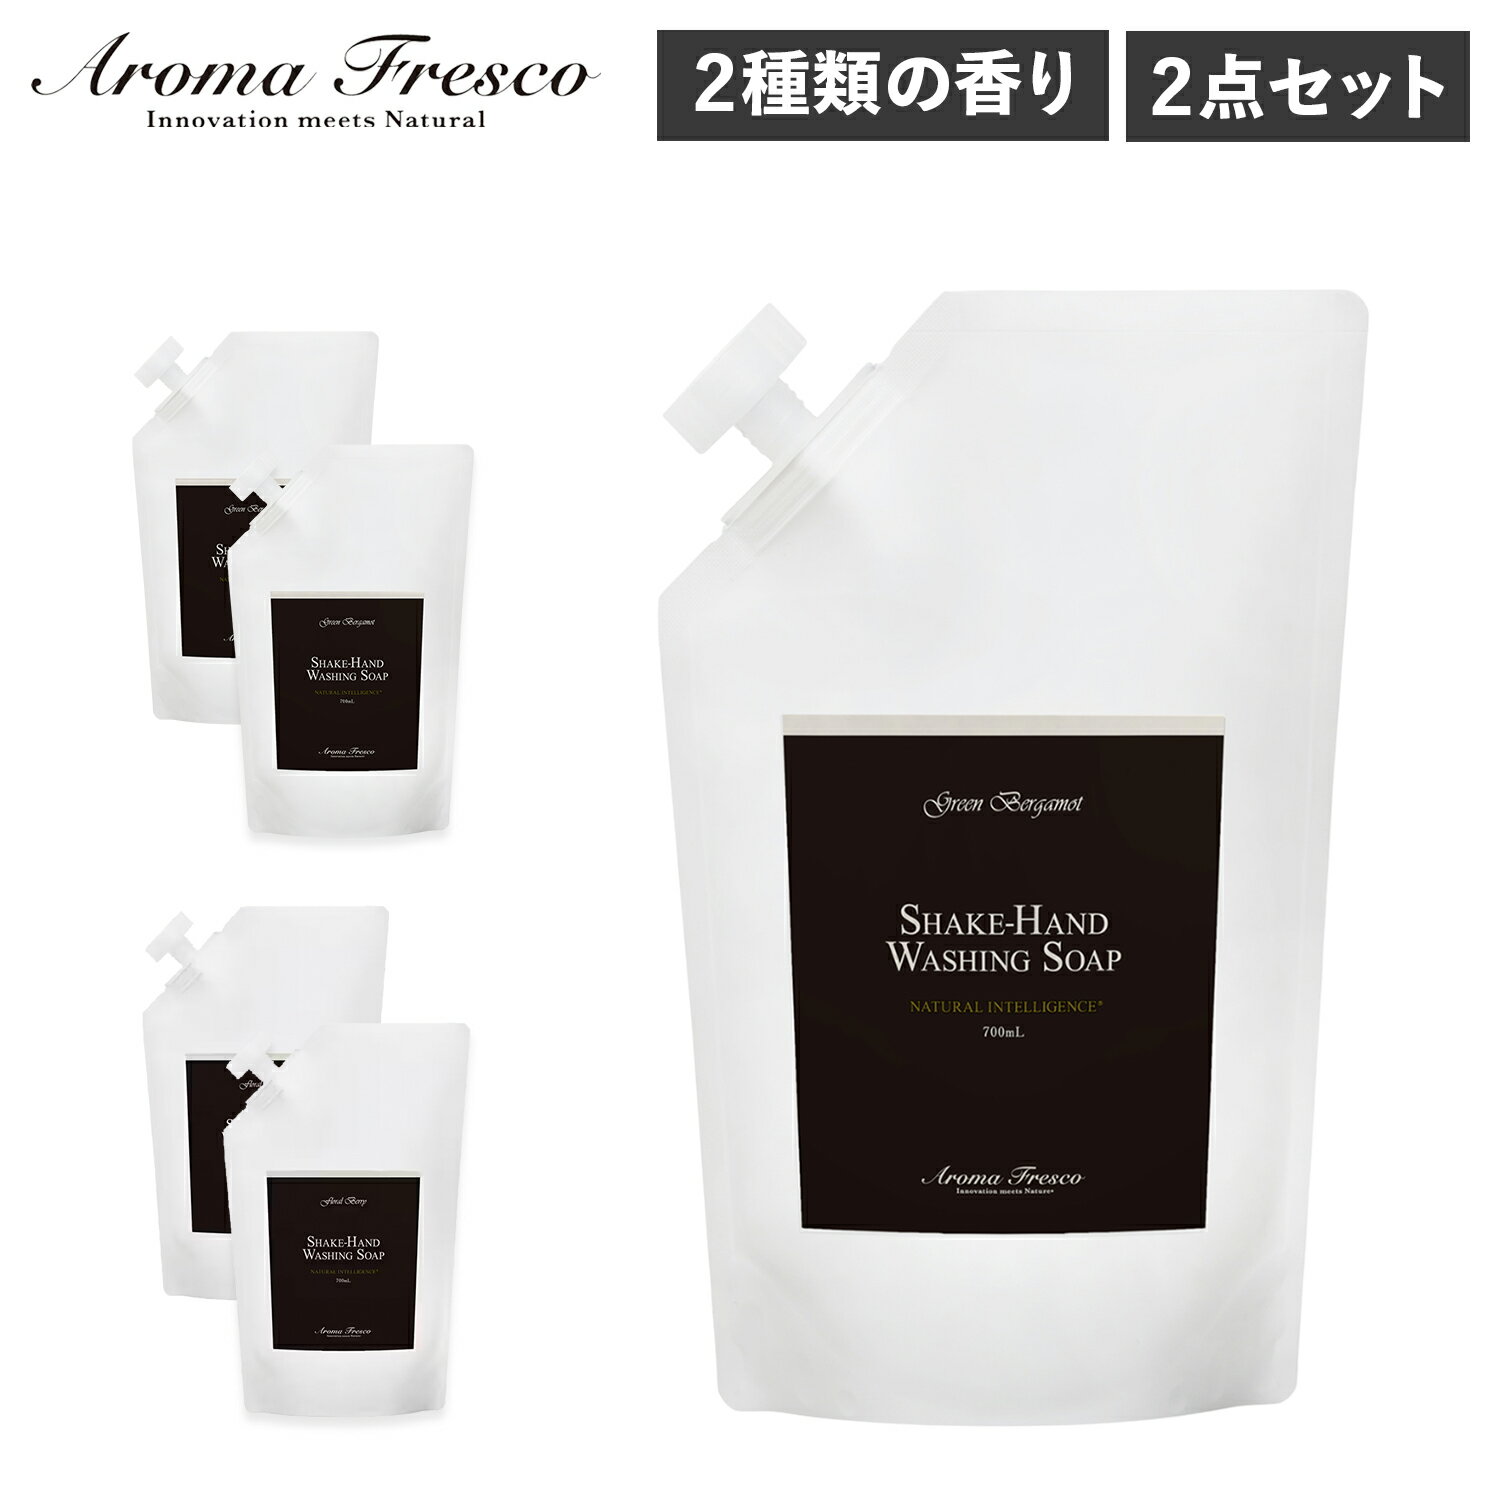 Aroma Fresco アロマフレスコ ハンドソープ 詰替え用 2点セット 石鹸 洗剤 ボトル リキッド 液体 700ml 肌にやさしい フレグランス 植物由来 天然素材 0810002